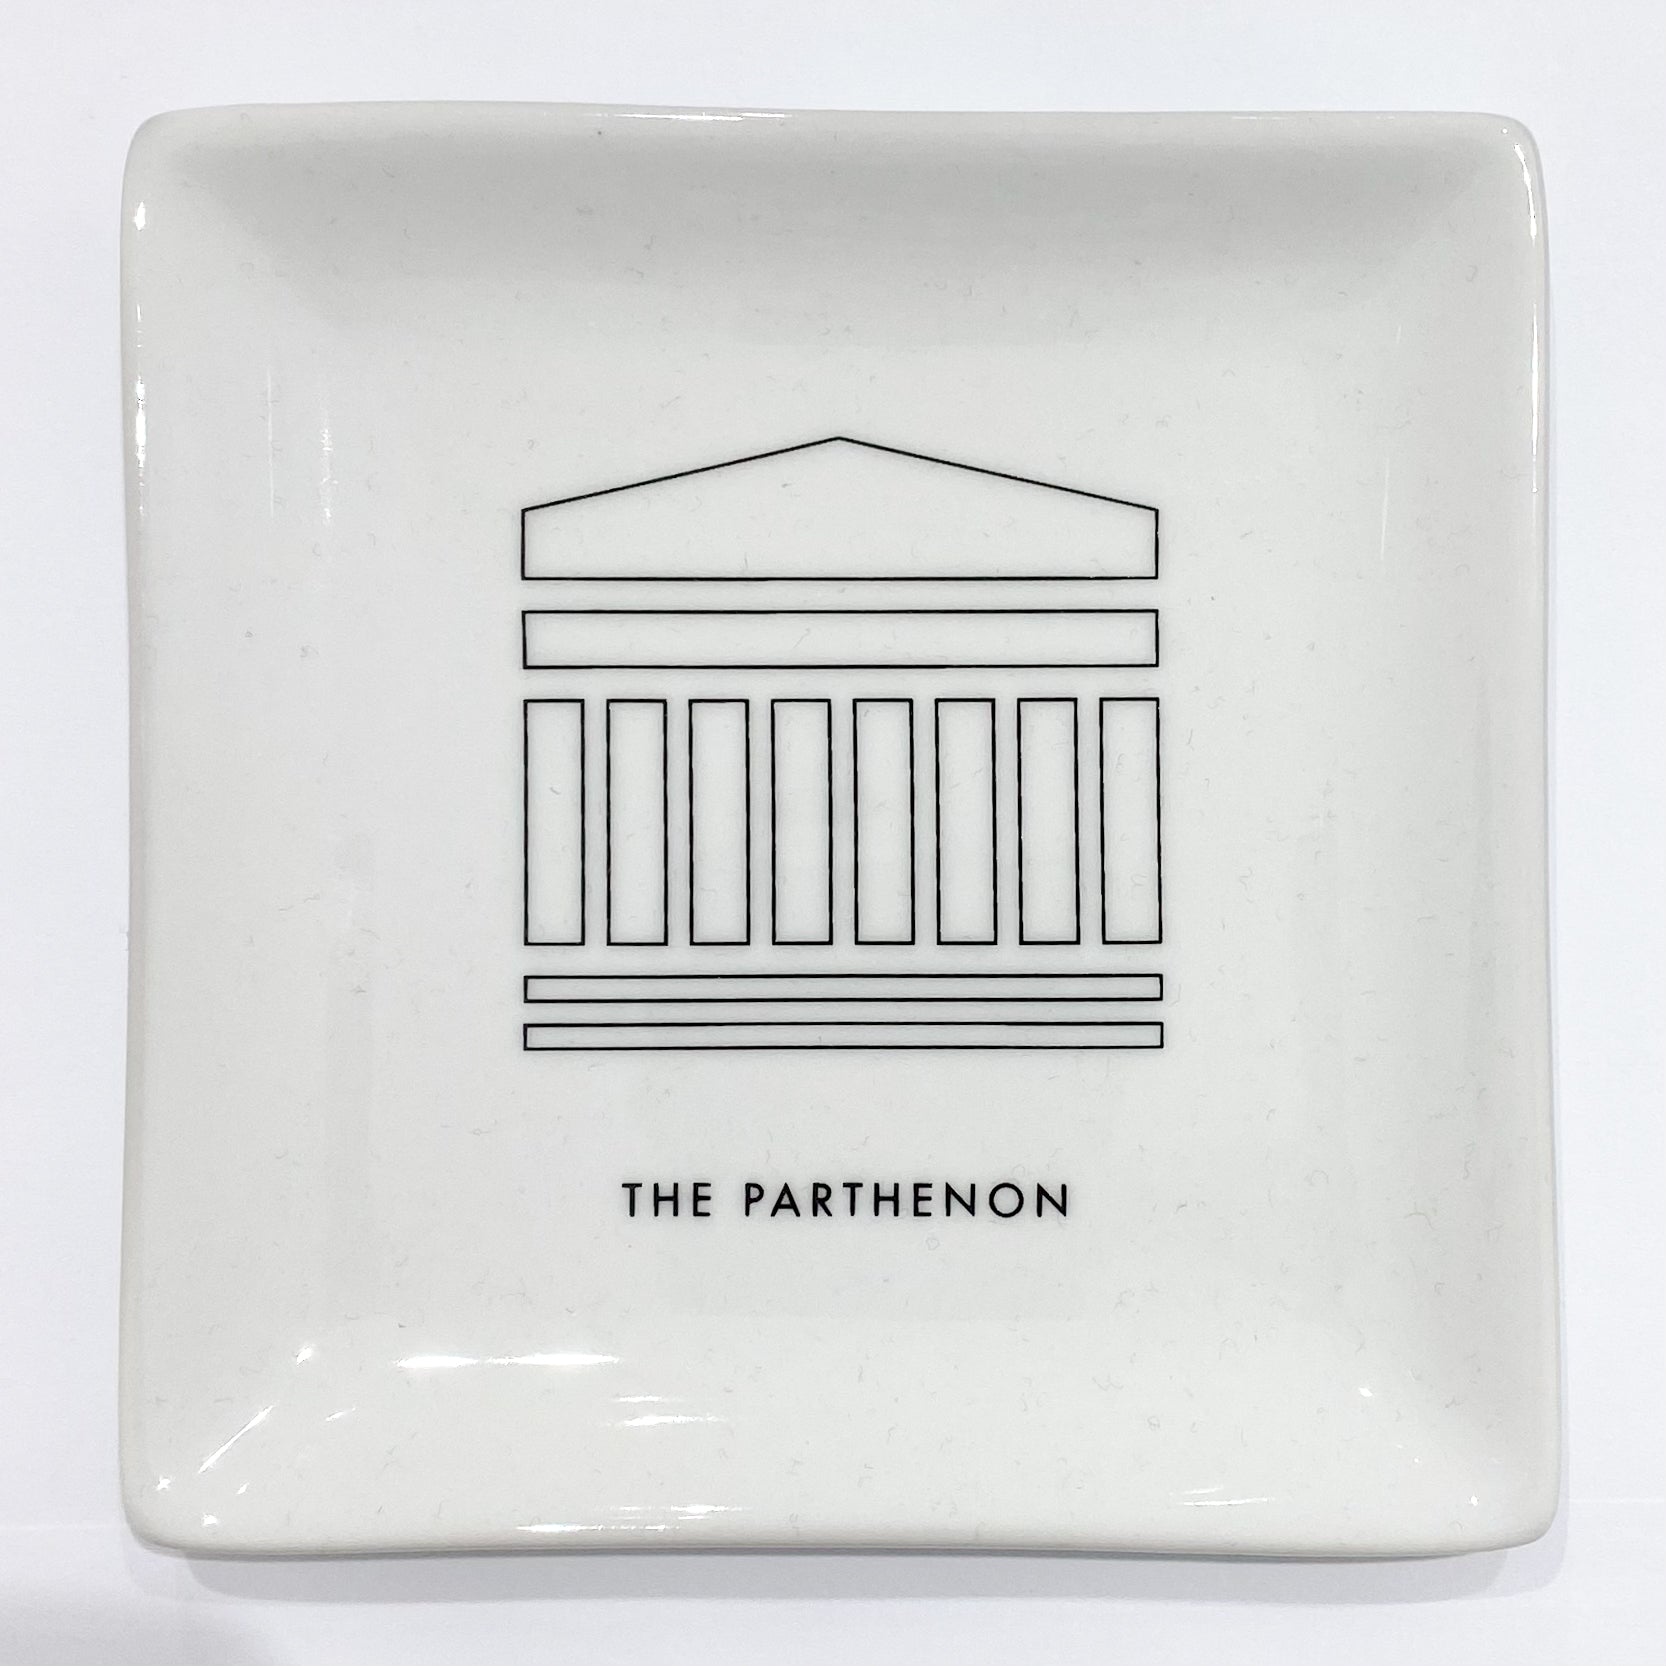 The Parthenon tray